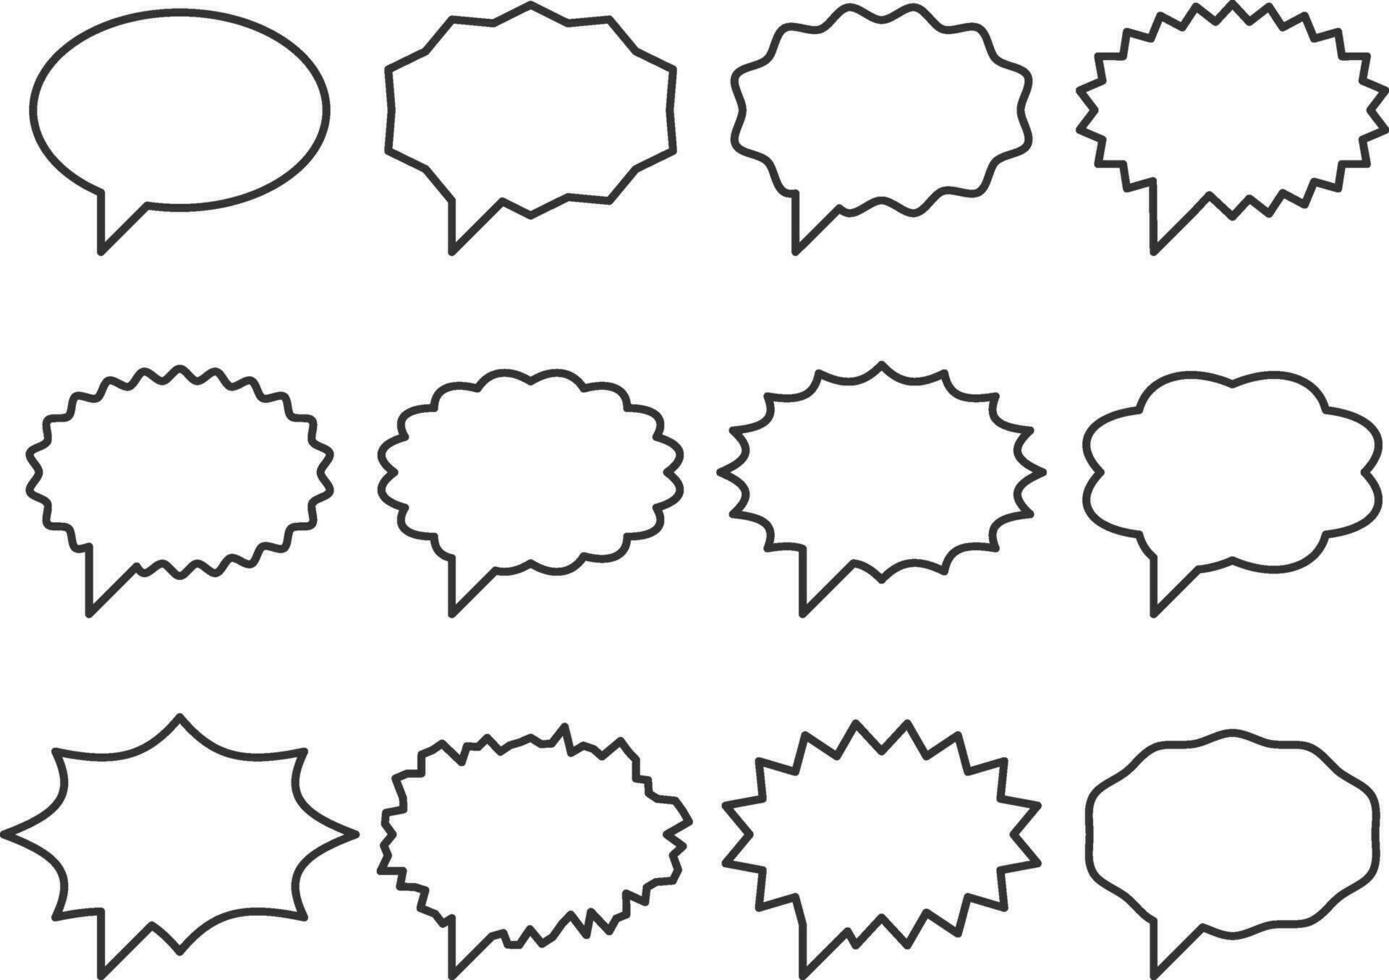 definir o vetor de fala de bolhas de conversa. elementos de design de ícone de bolha vazia em branco. bate-papo no modelo de símbolo de linha. silhueta de adesivos de balão de diálogo de coleção.